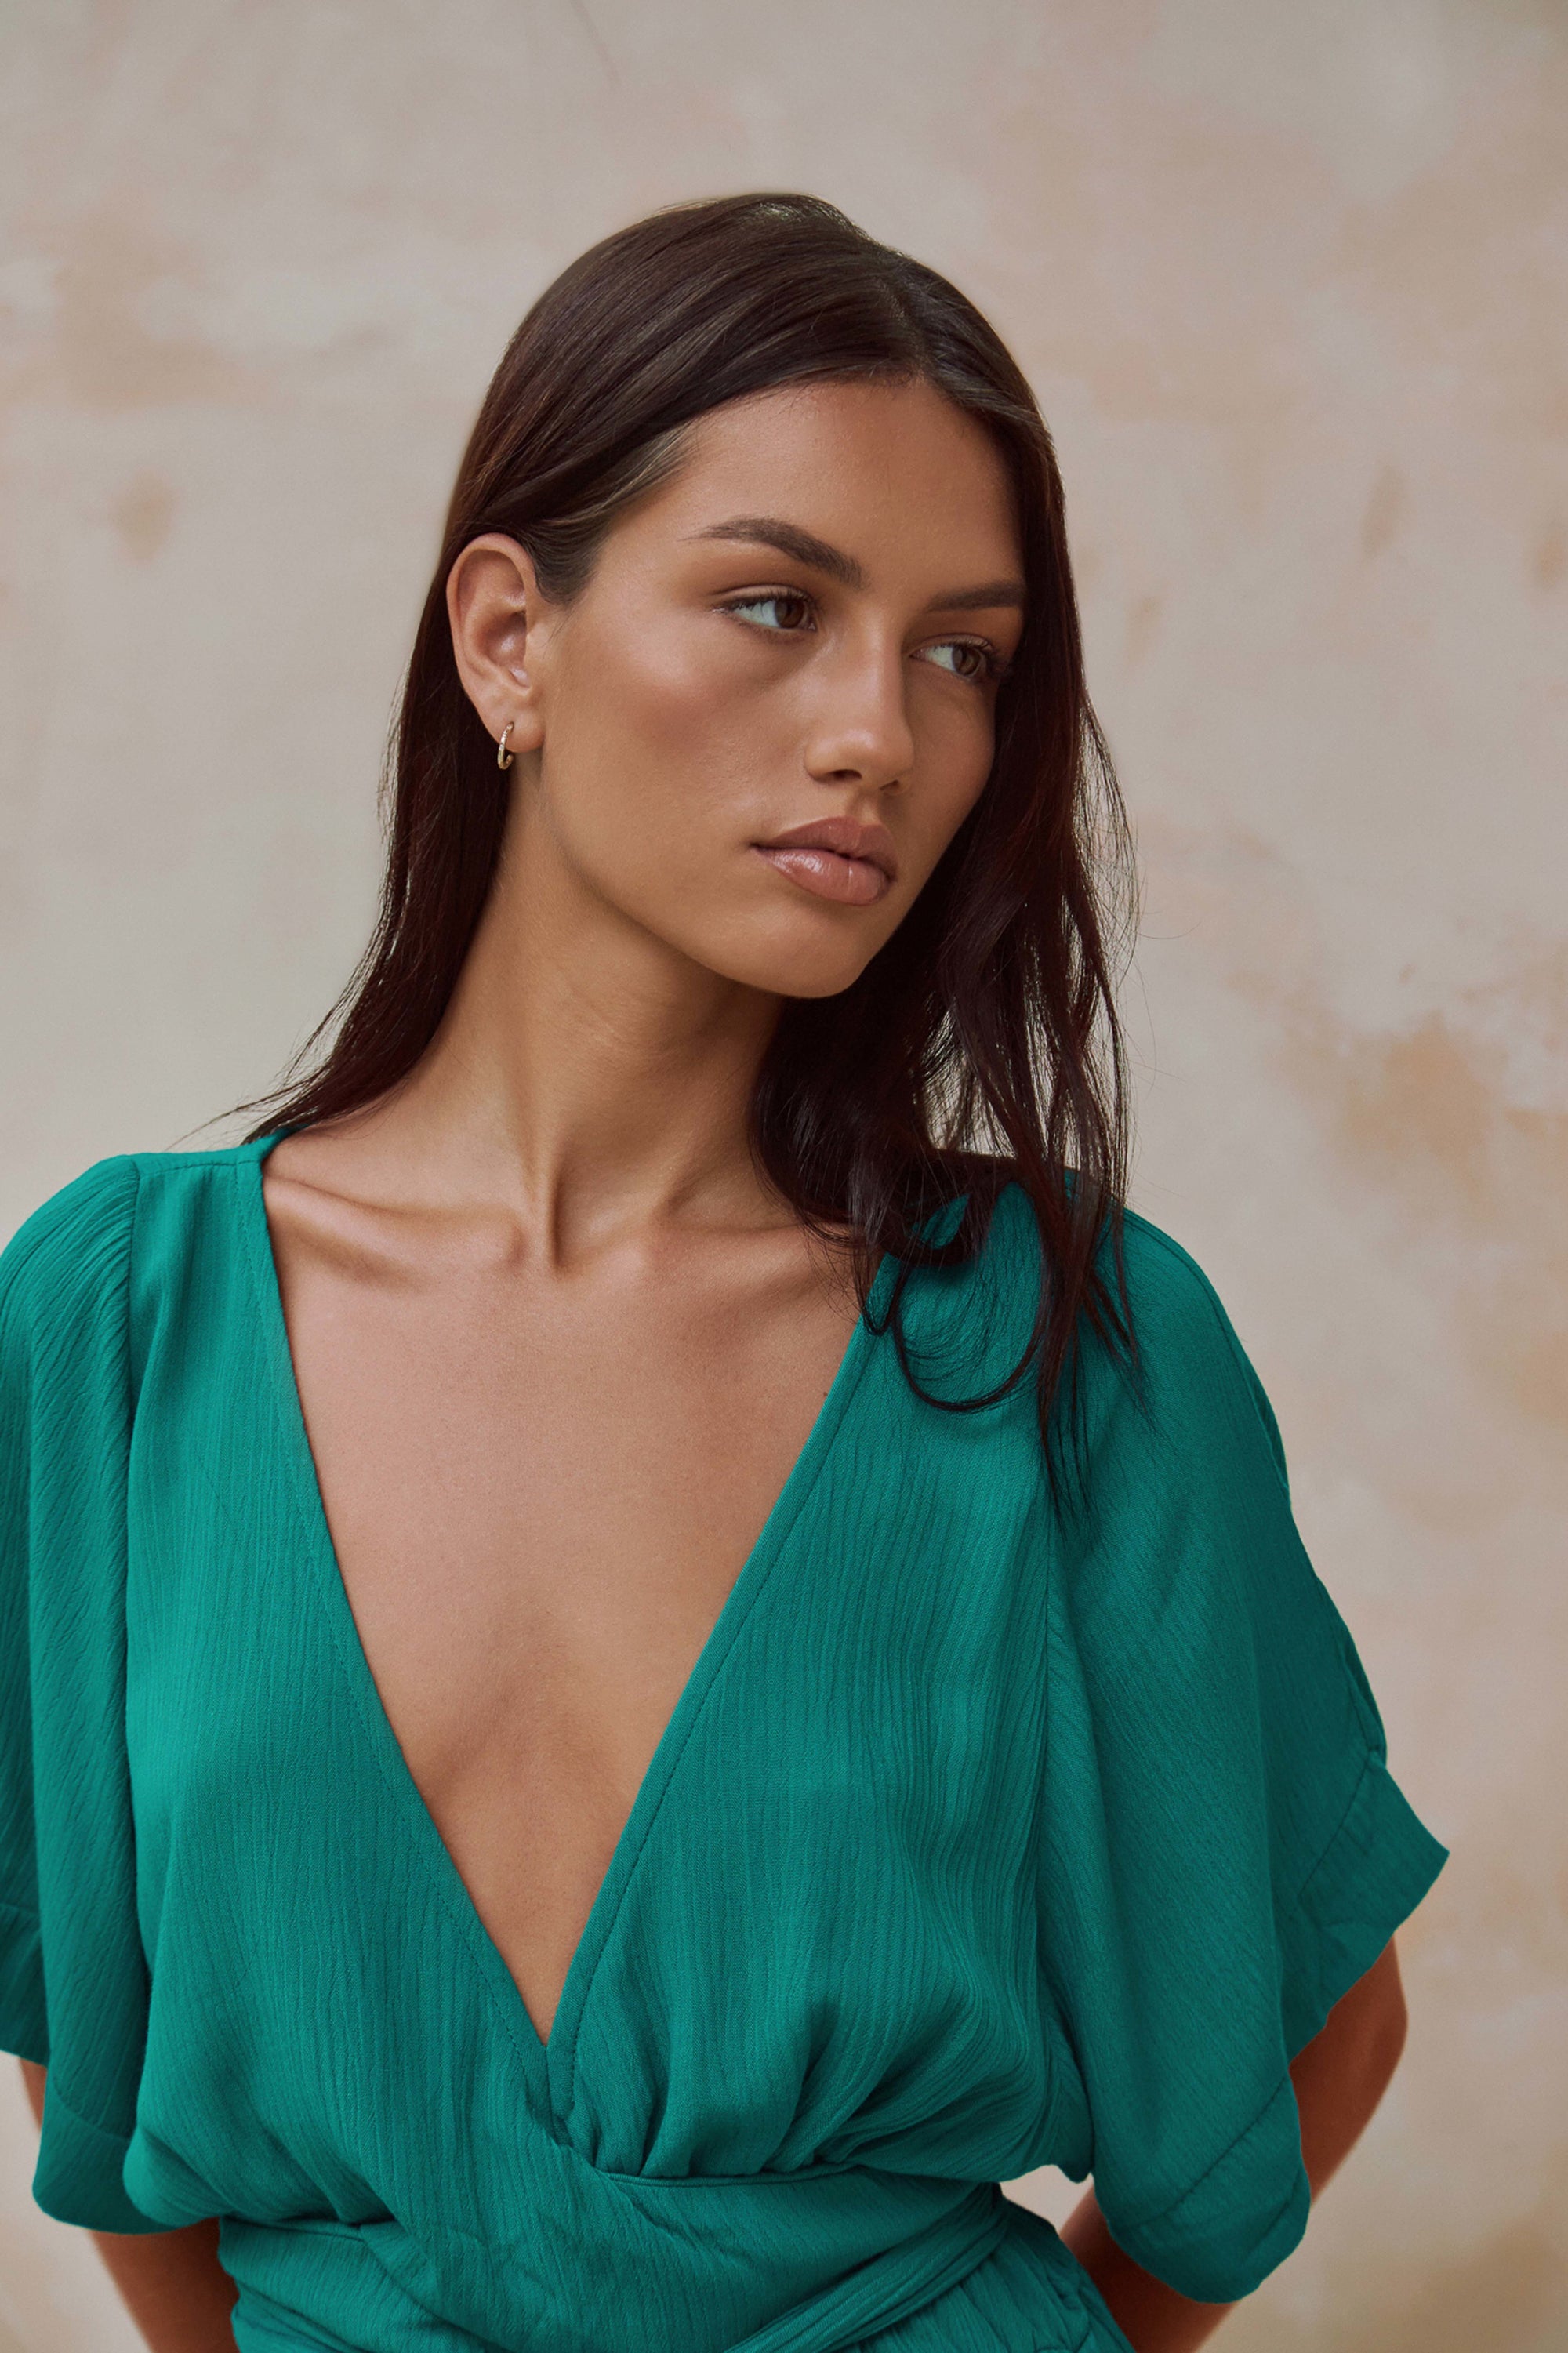 Melody Maxi Dress | Emerald